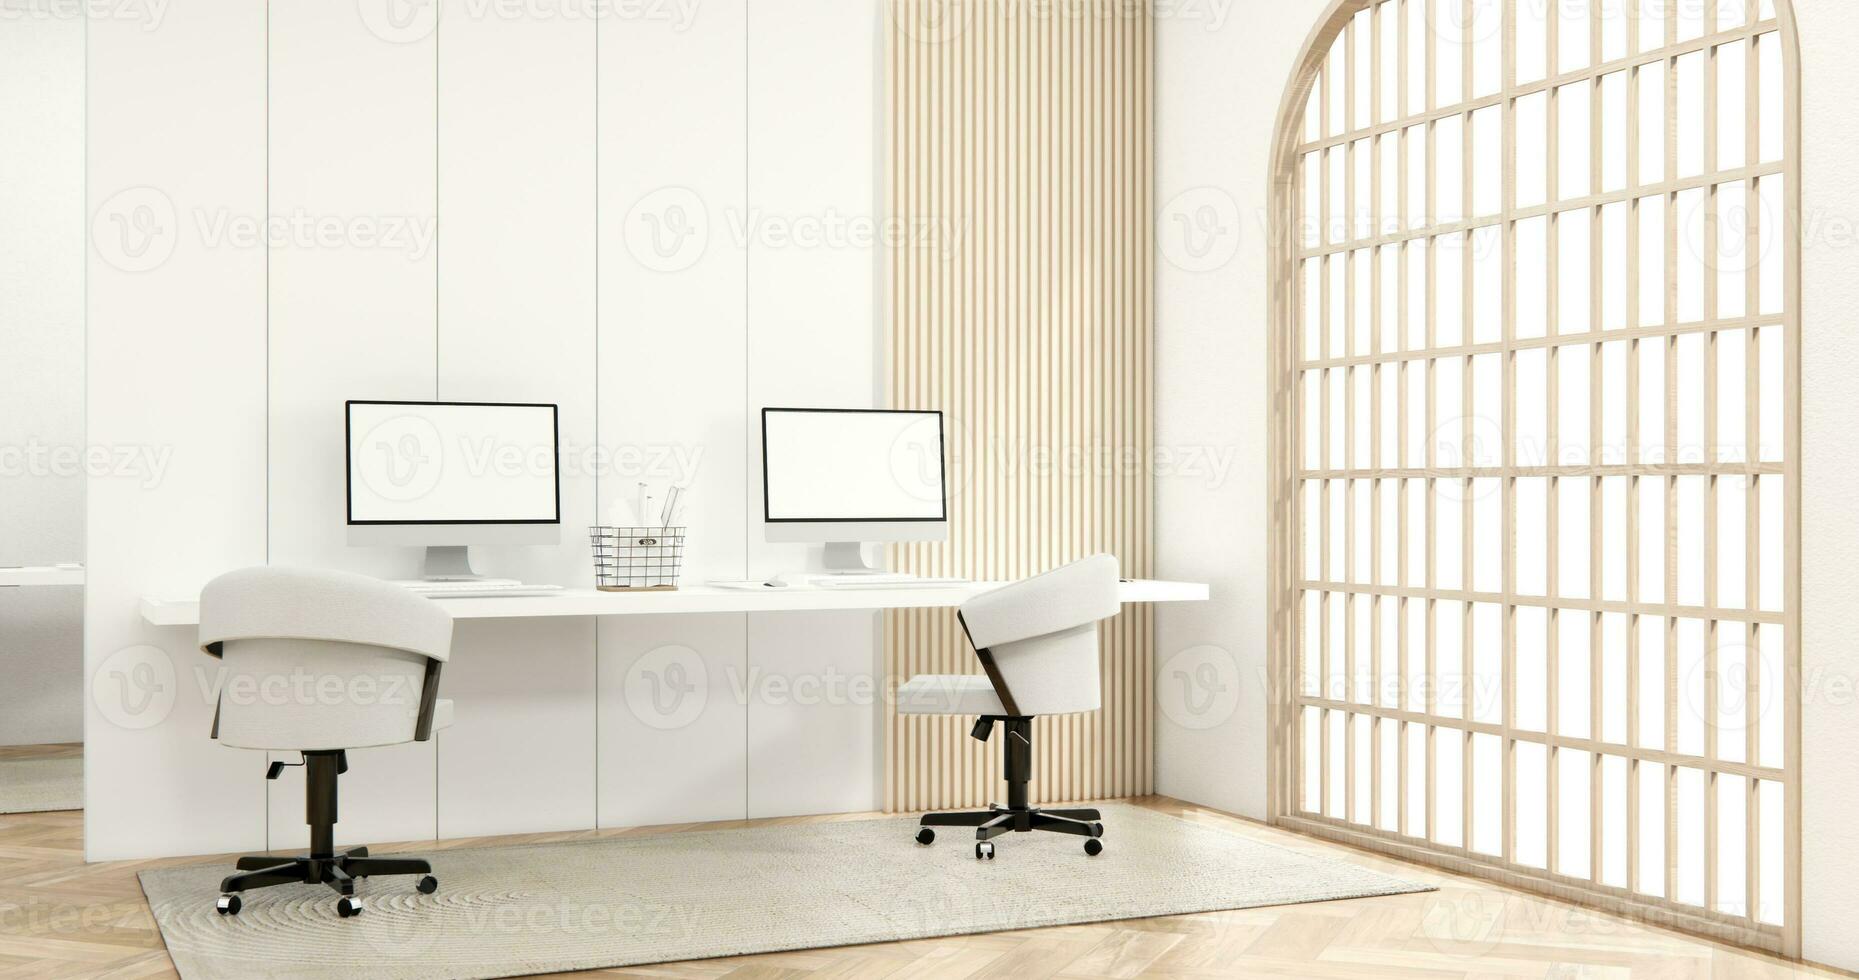 das Innere Computer und Büro Werkzeuge auf Schreibtisch Zimmer Muji Stil Innere Design. foto